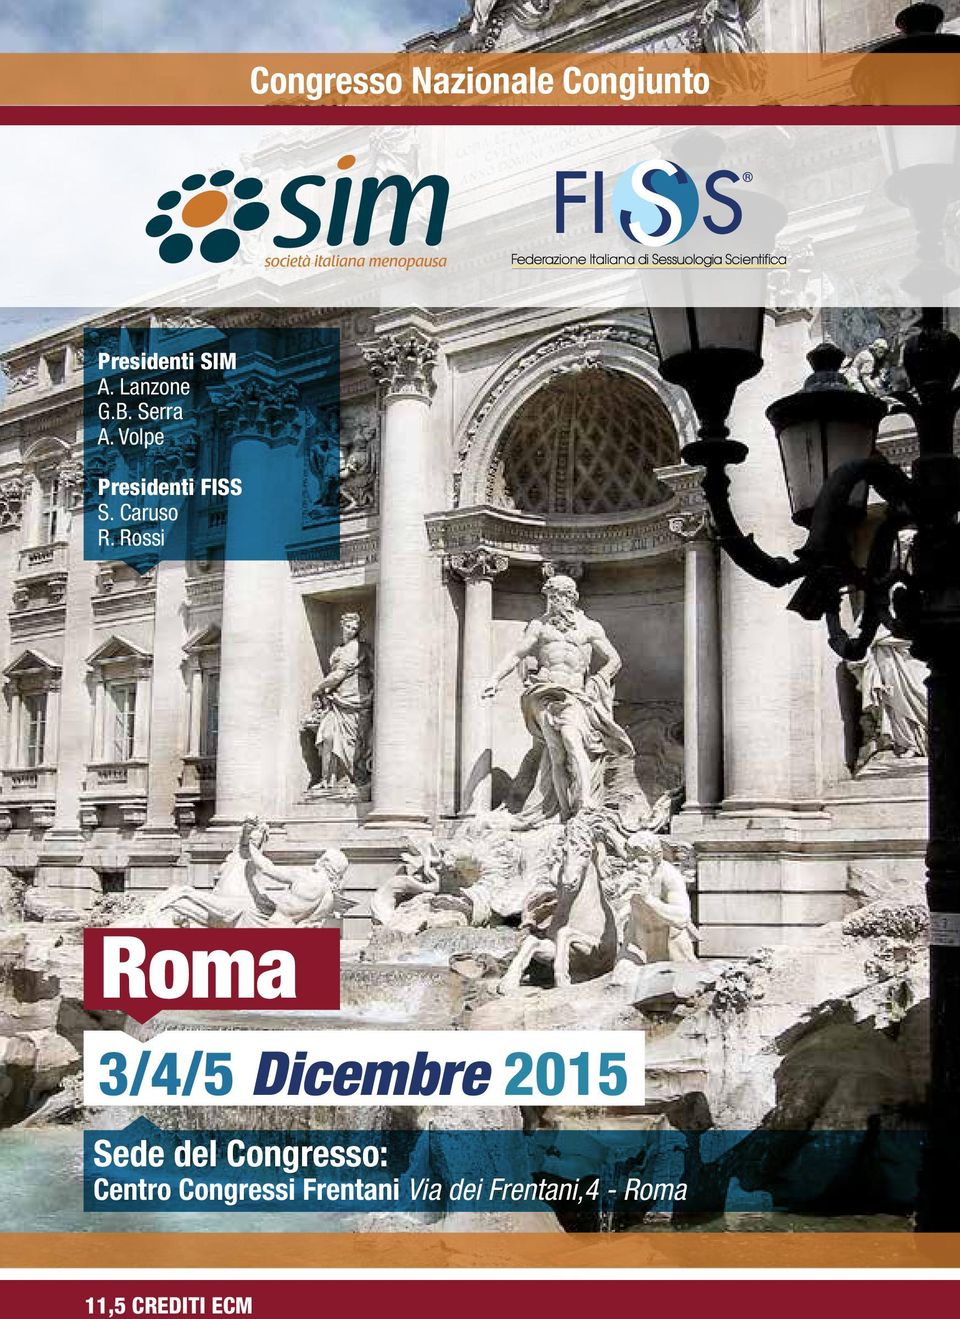 Rossi Roma 3/4/5 Dicembre 2015 Sede del Congresso: